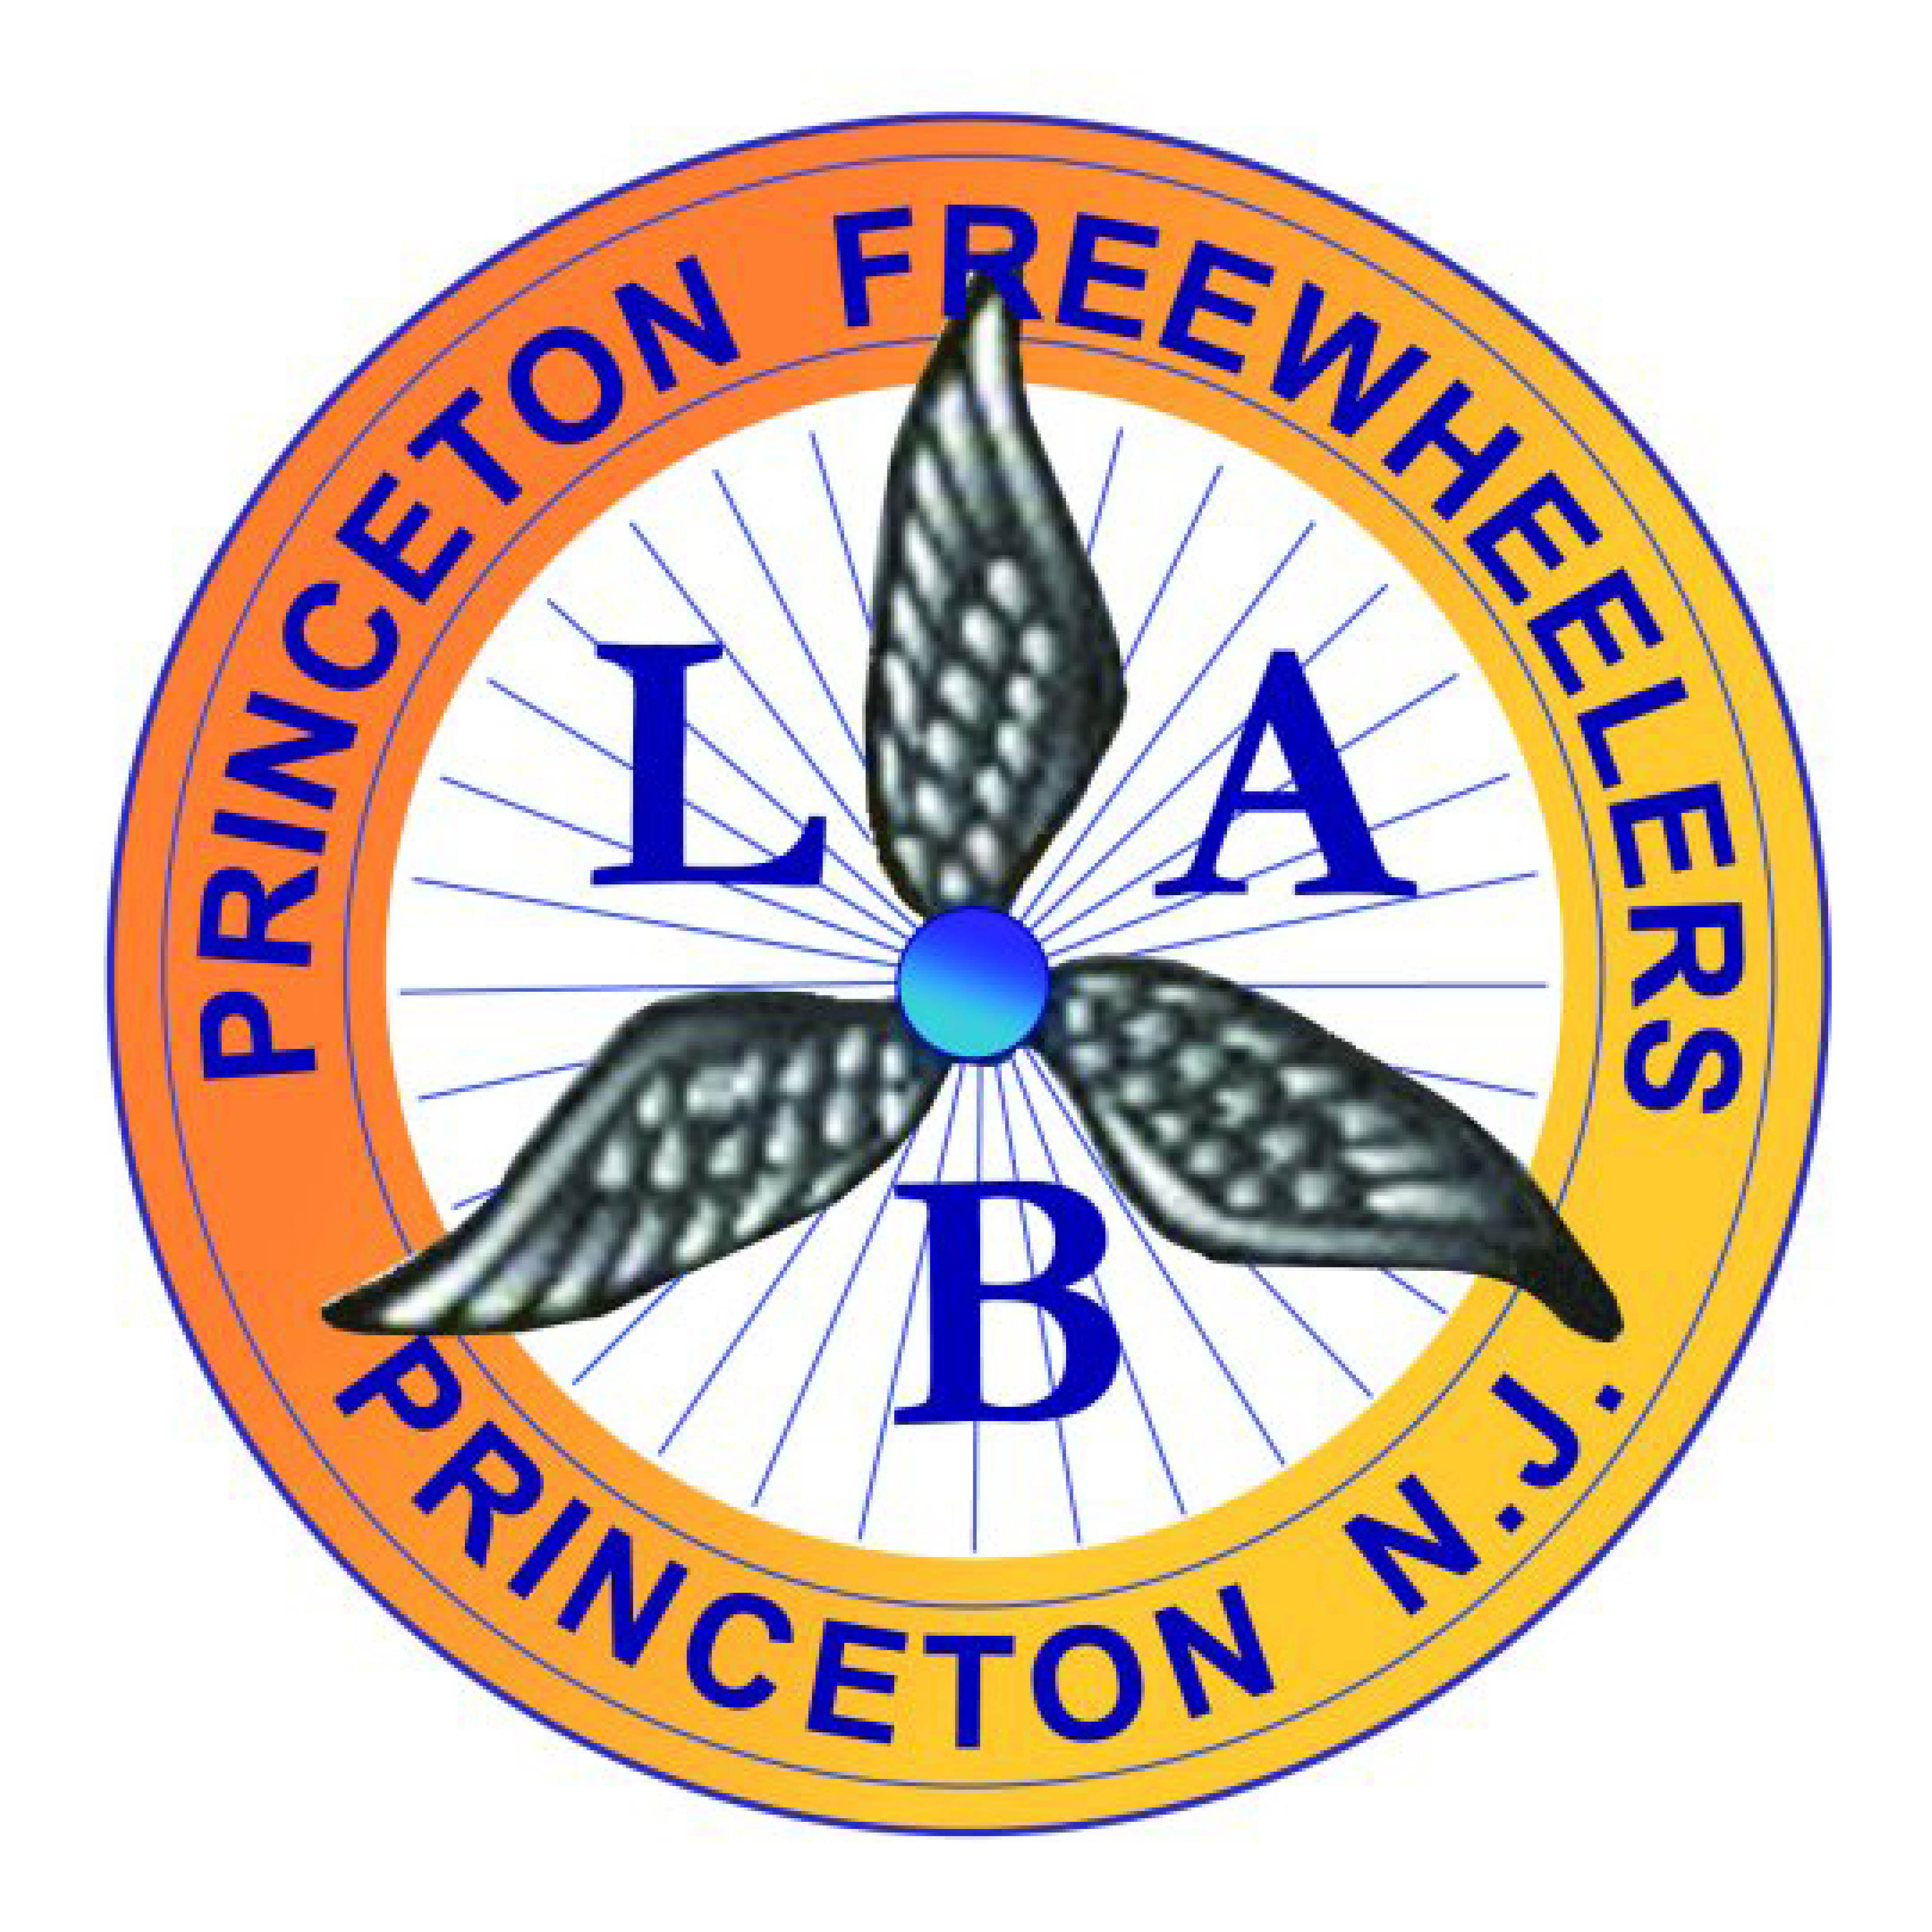 Princeton Freewheelers